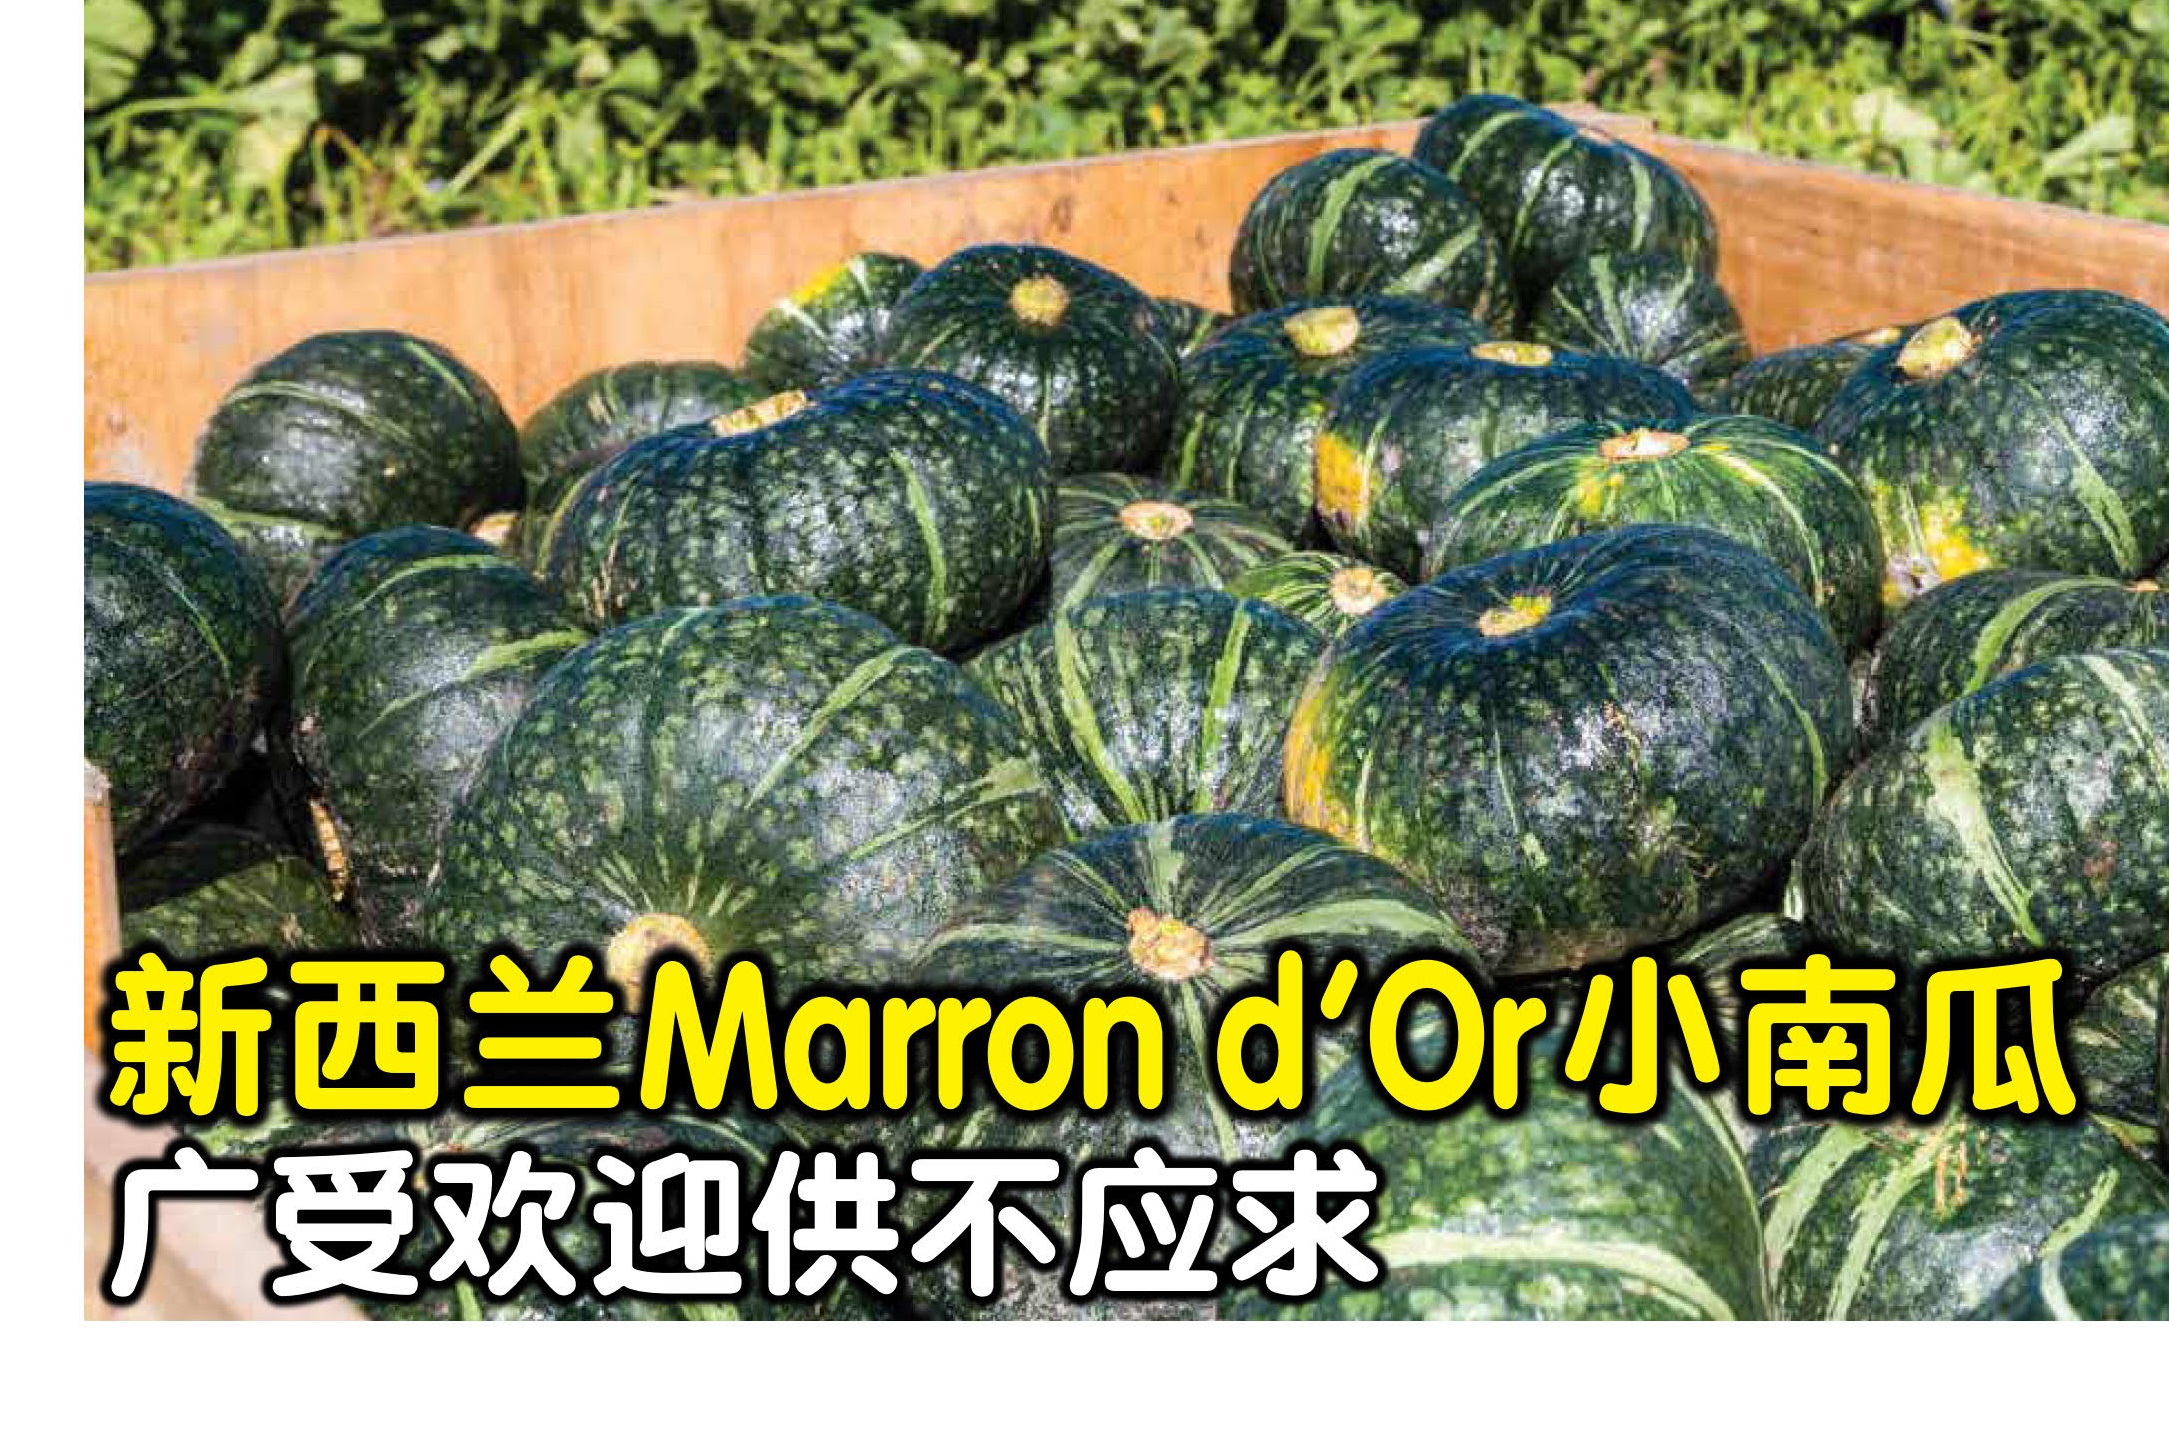 新西兰Marron d’Or小南瓜 广受欢迎供不应求 - 农牧世界